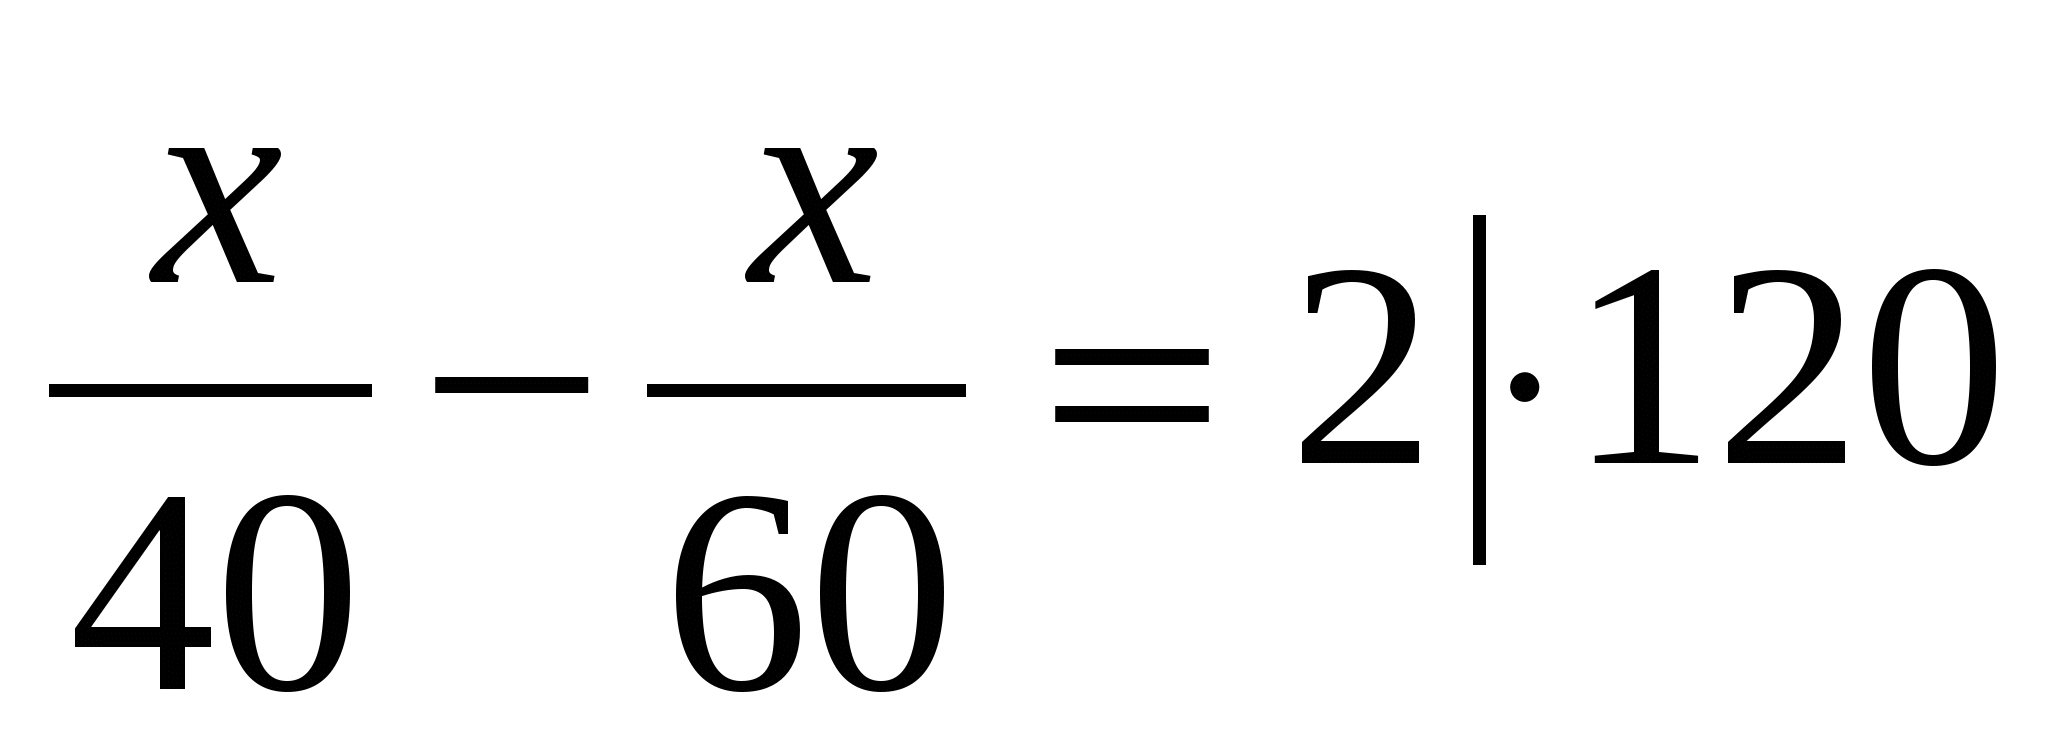 Решение задач и уравнений на тему «Разложение многочленов на множители».